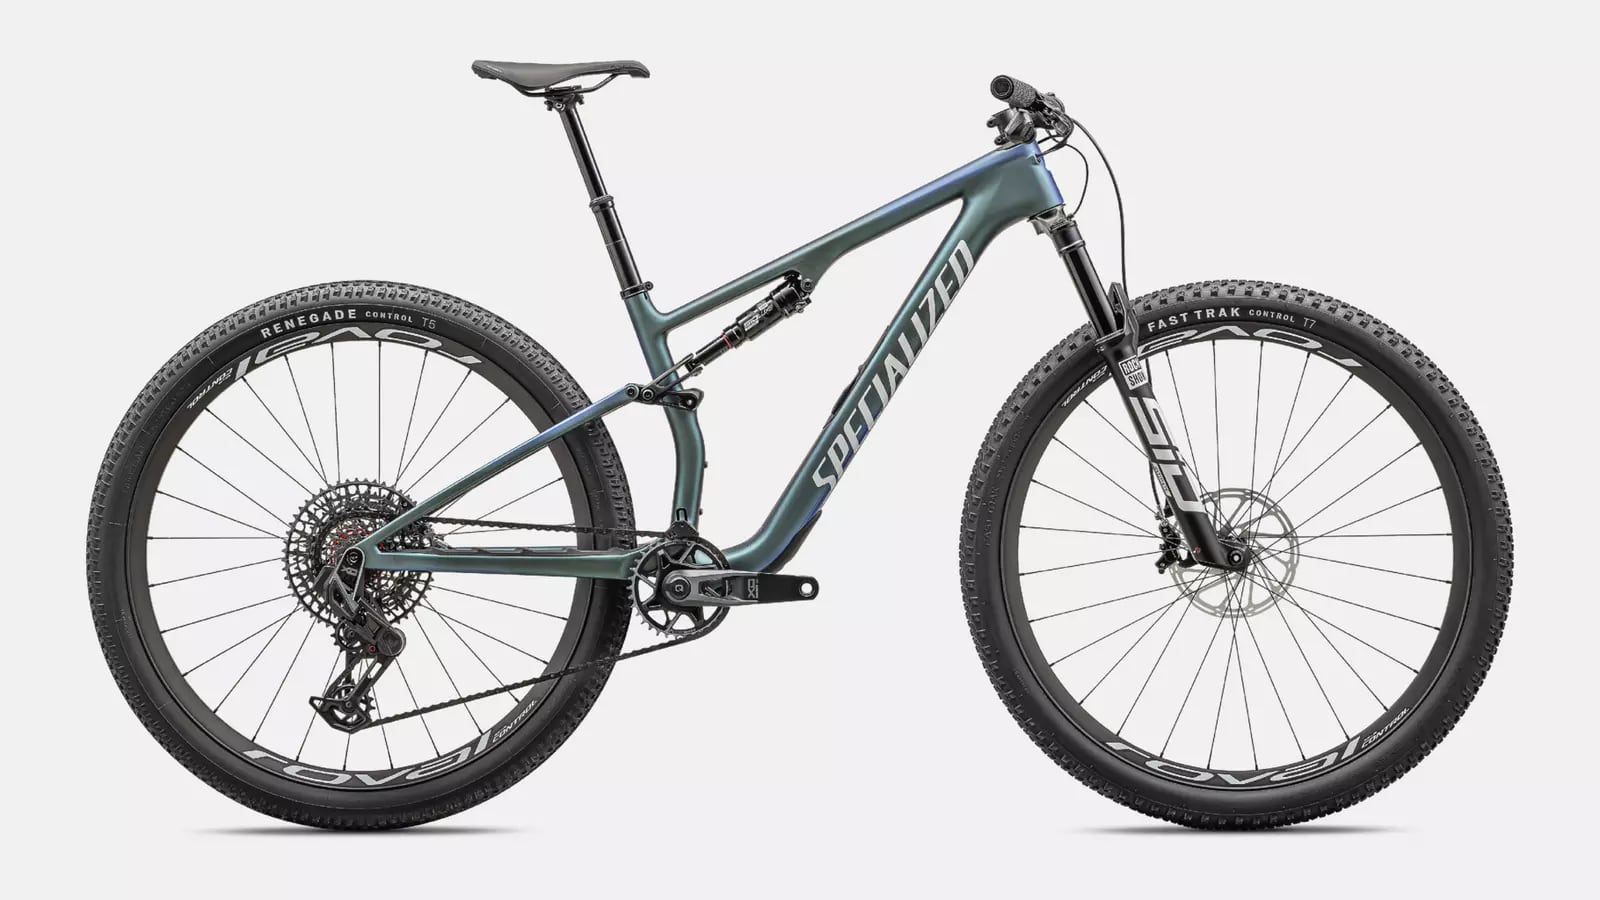 La marca Specialized diseño la Elite 8 teniendo en cuenta las dificultades del mountain bike - crédito Specialized